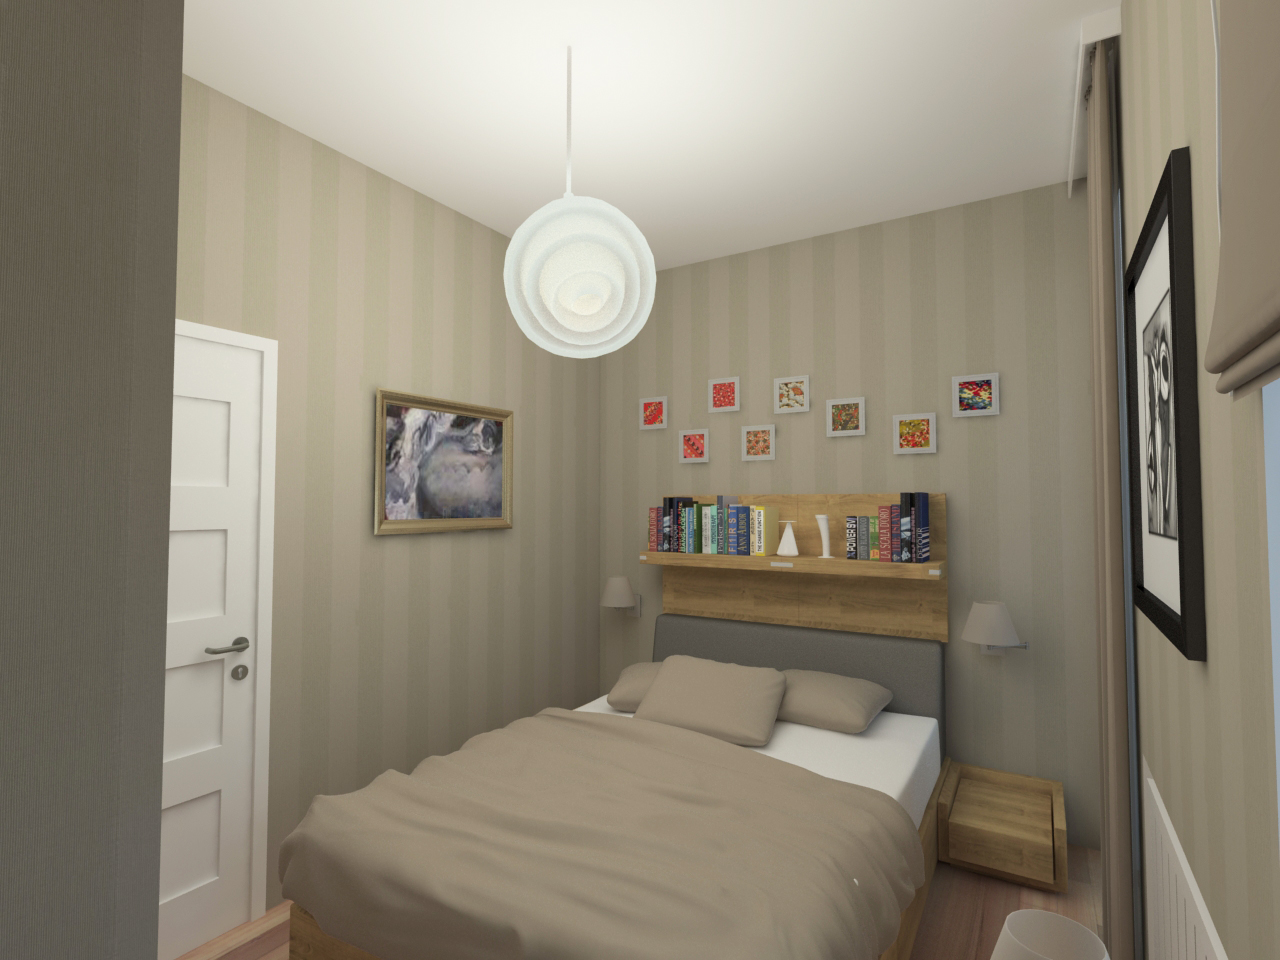 Látványterv hálószoba / Architectural visualization bedroom